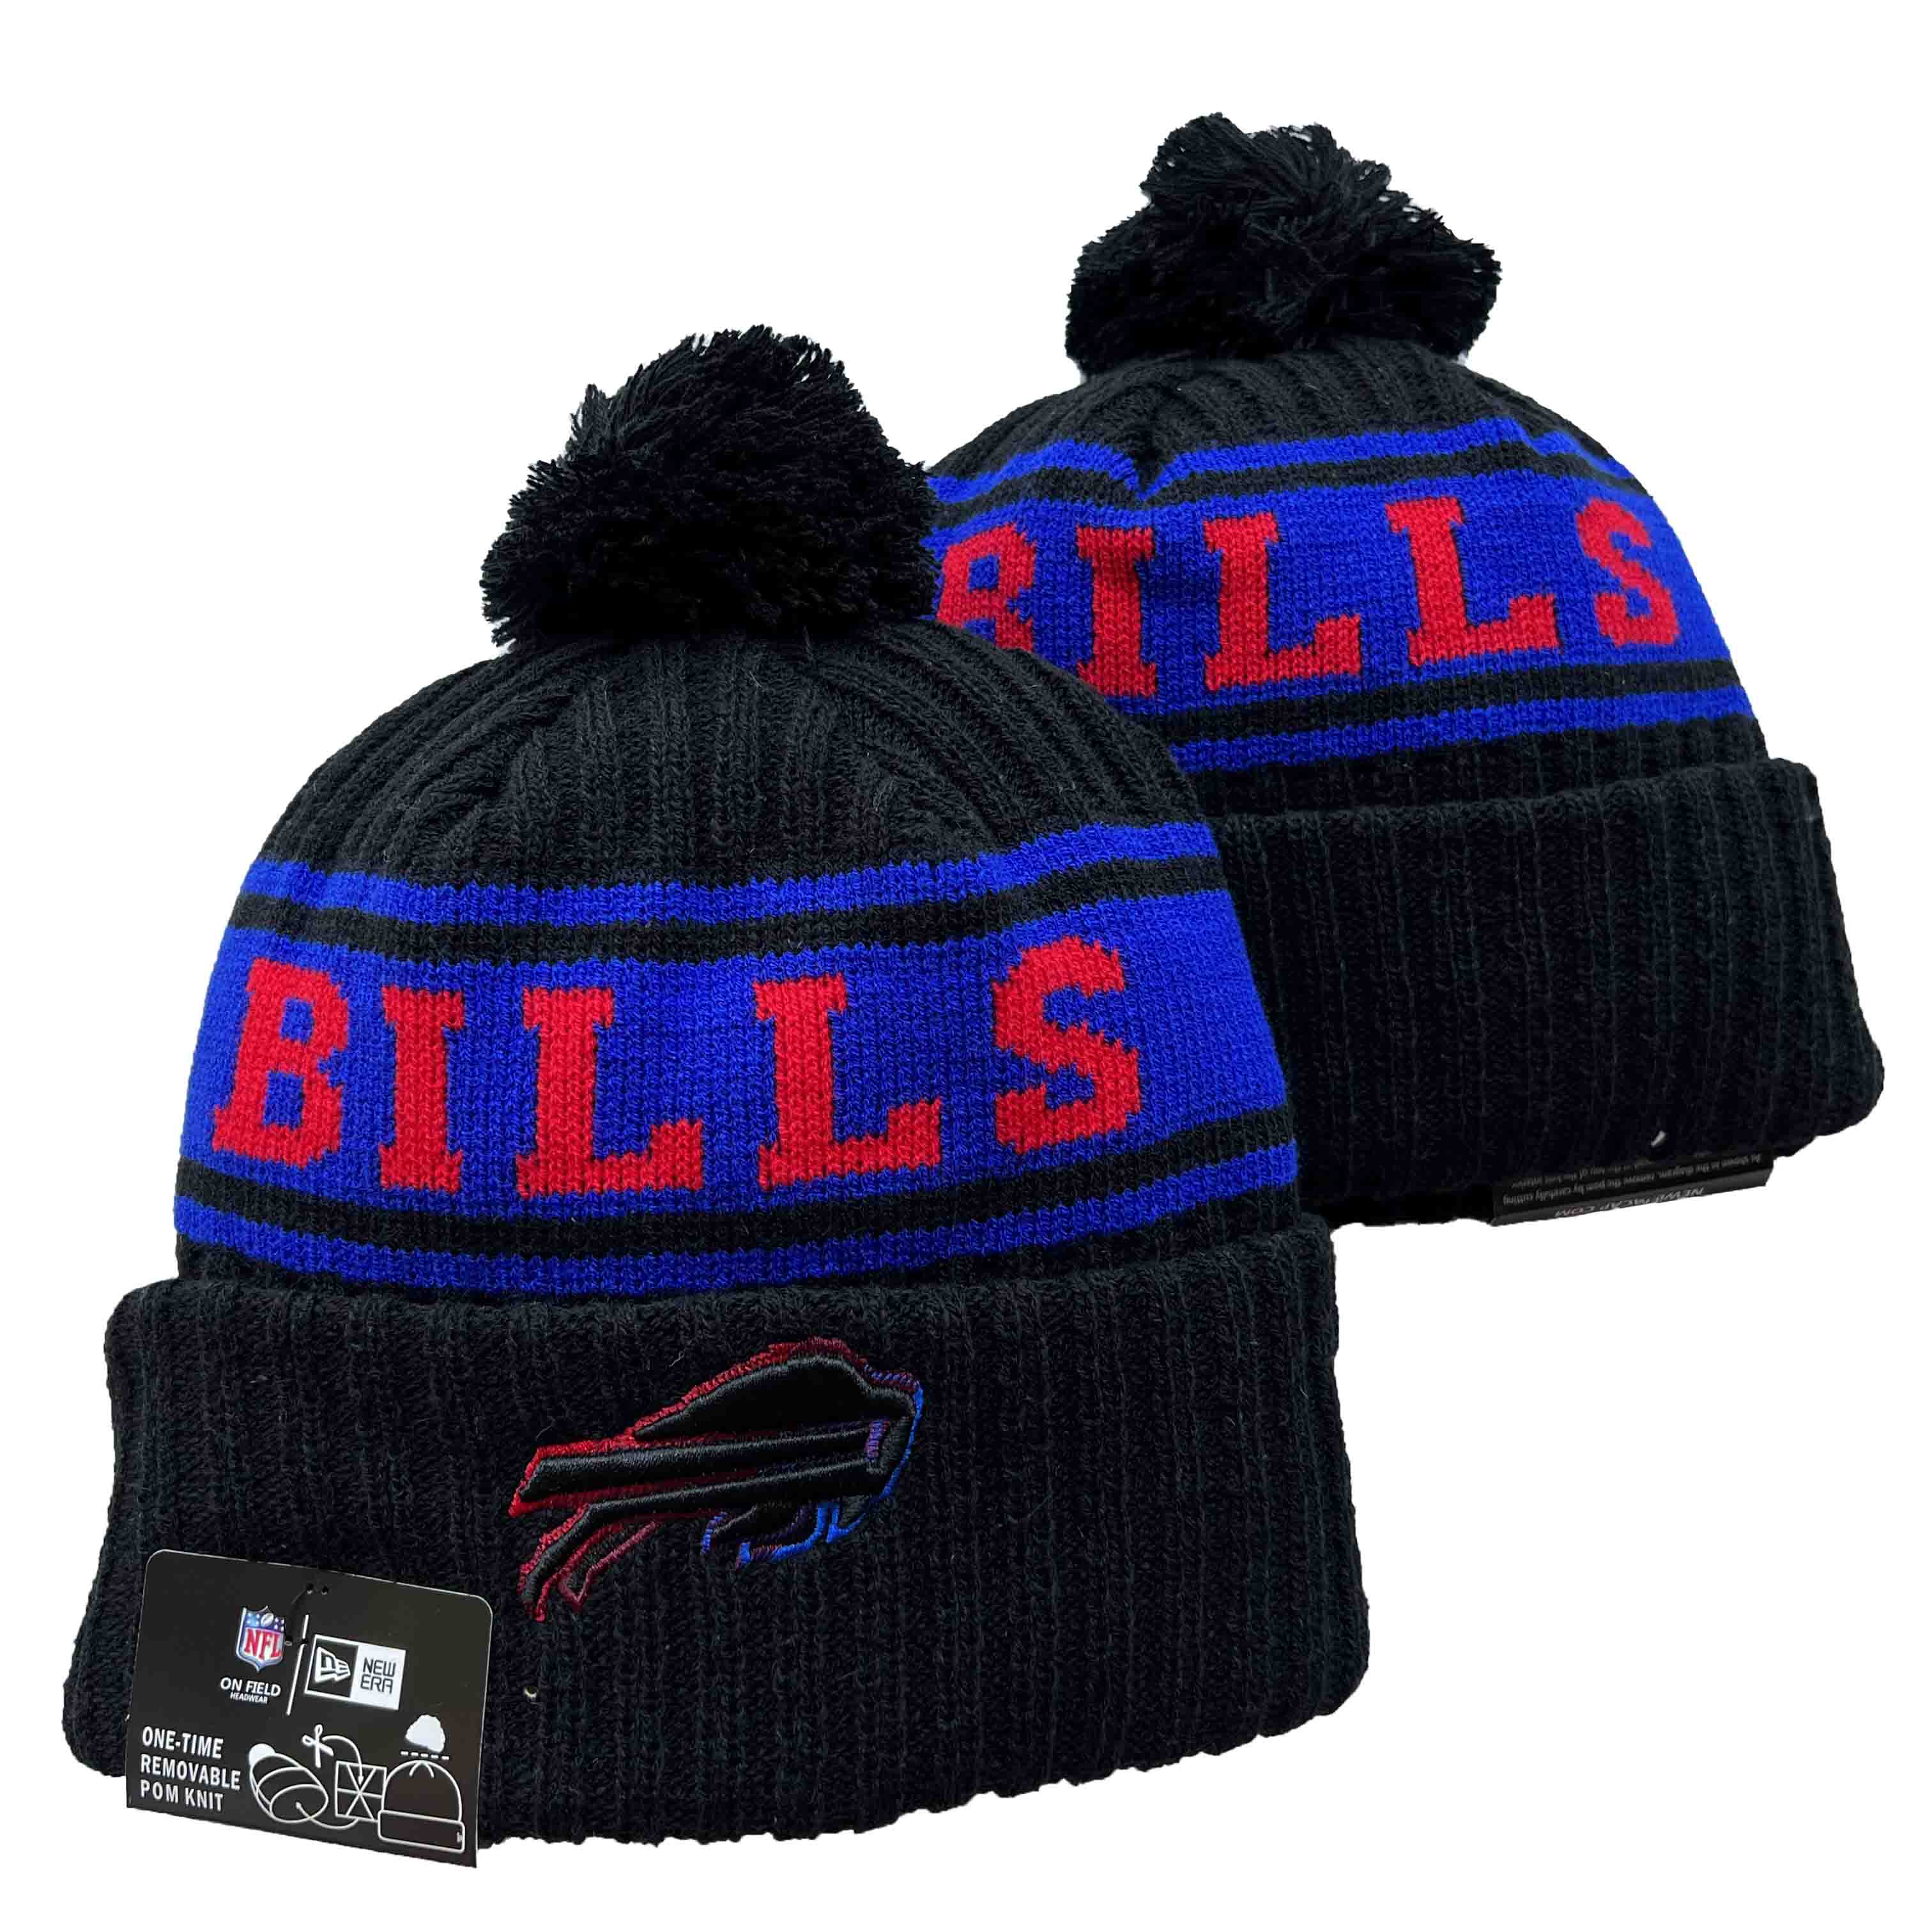 Buffalo Bills Knit Hats 01129